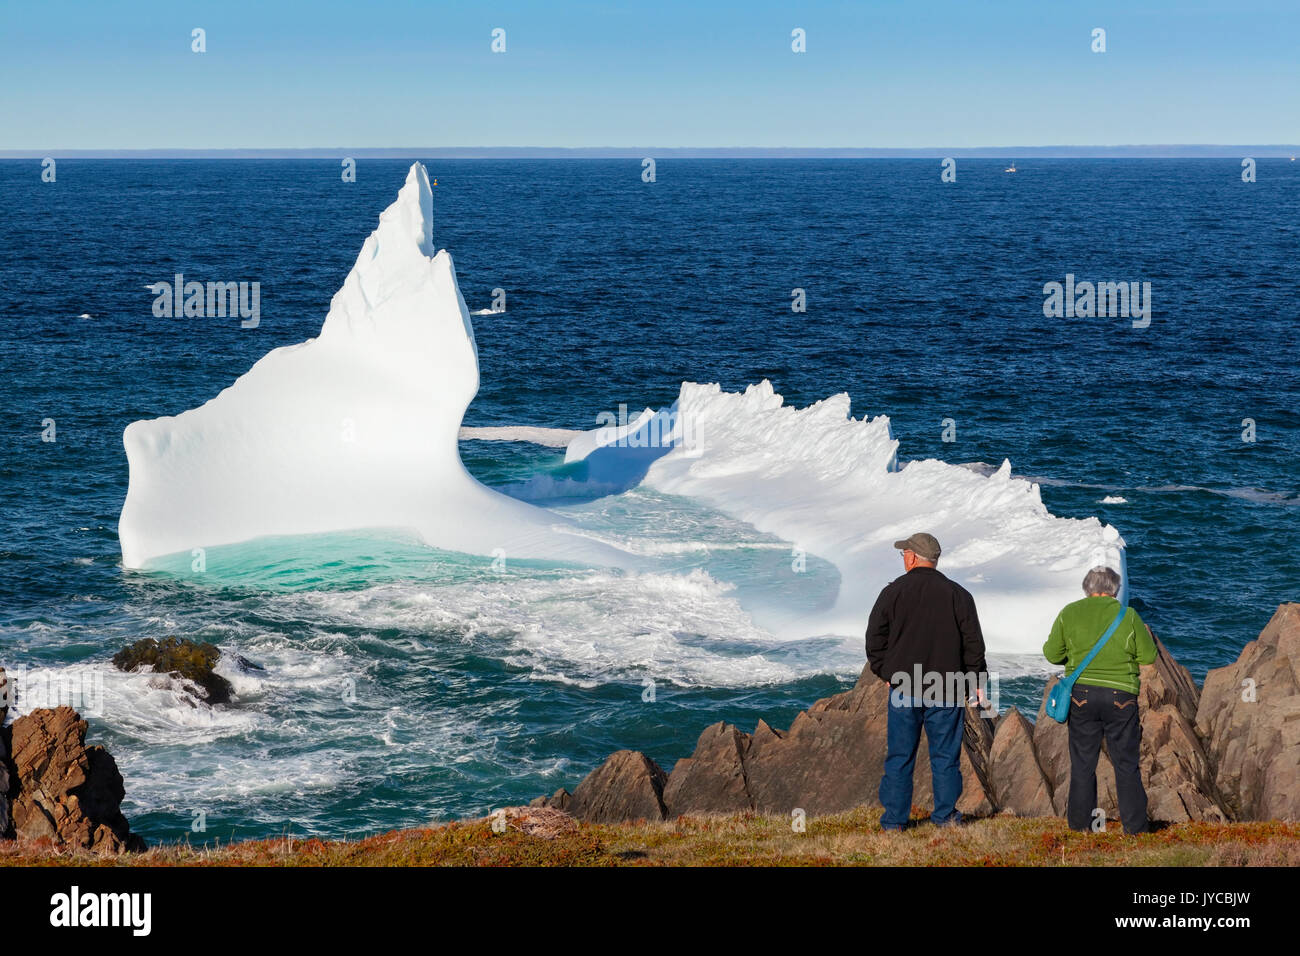 Les touristes de l'affichage d'un gros iceberg flottant dans l'océan Atlantique à Bonavista, Terre-Neuve et Labrador, Canada. Banque D'Images